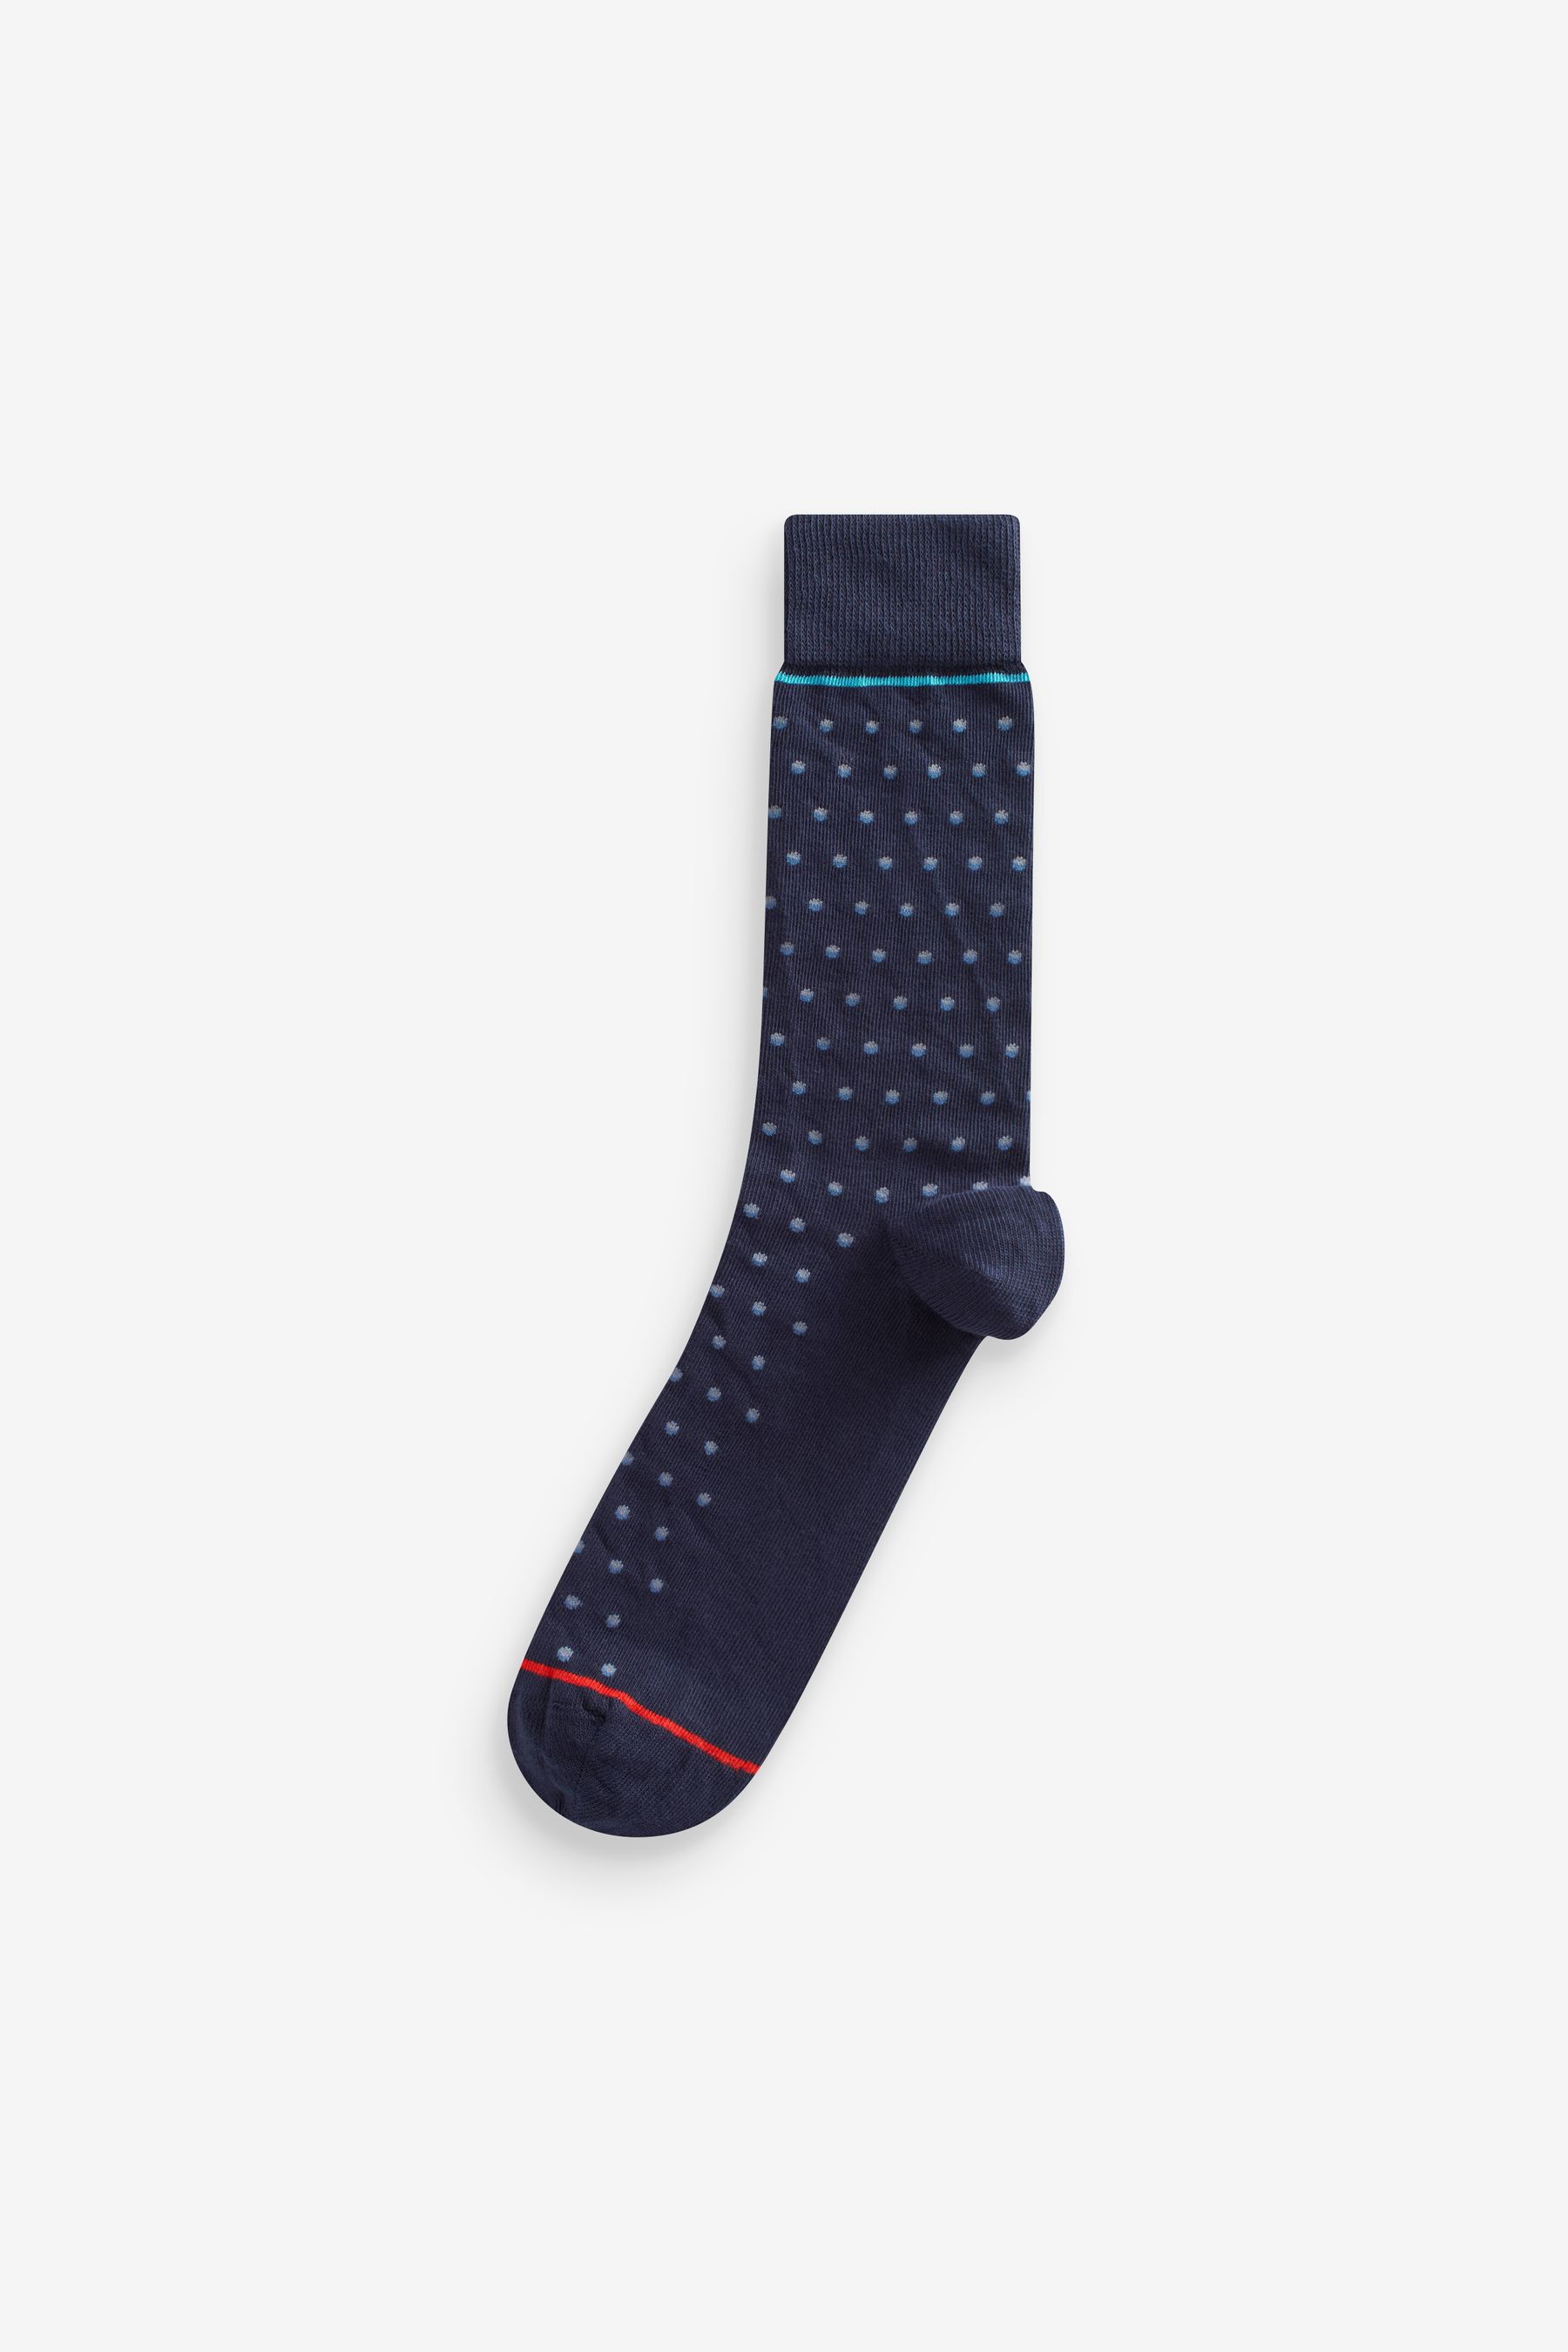 Buy Navy Pattern Smart Socks 5 Pack from Next Australia